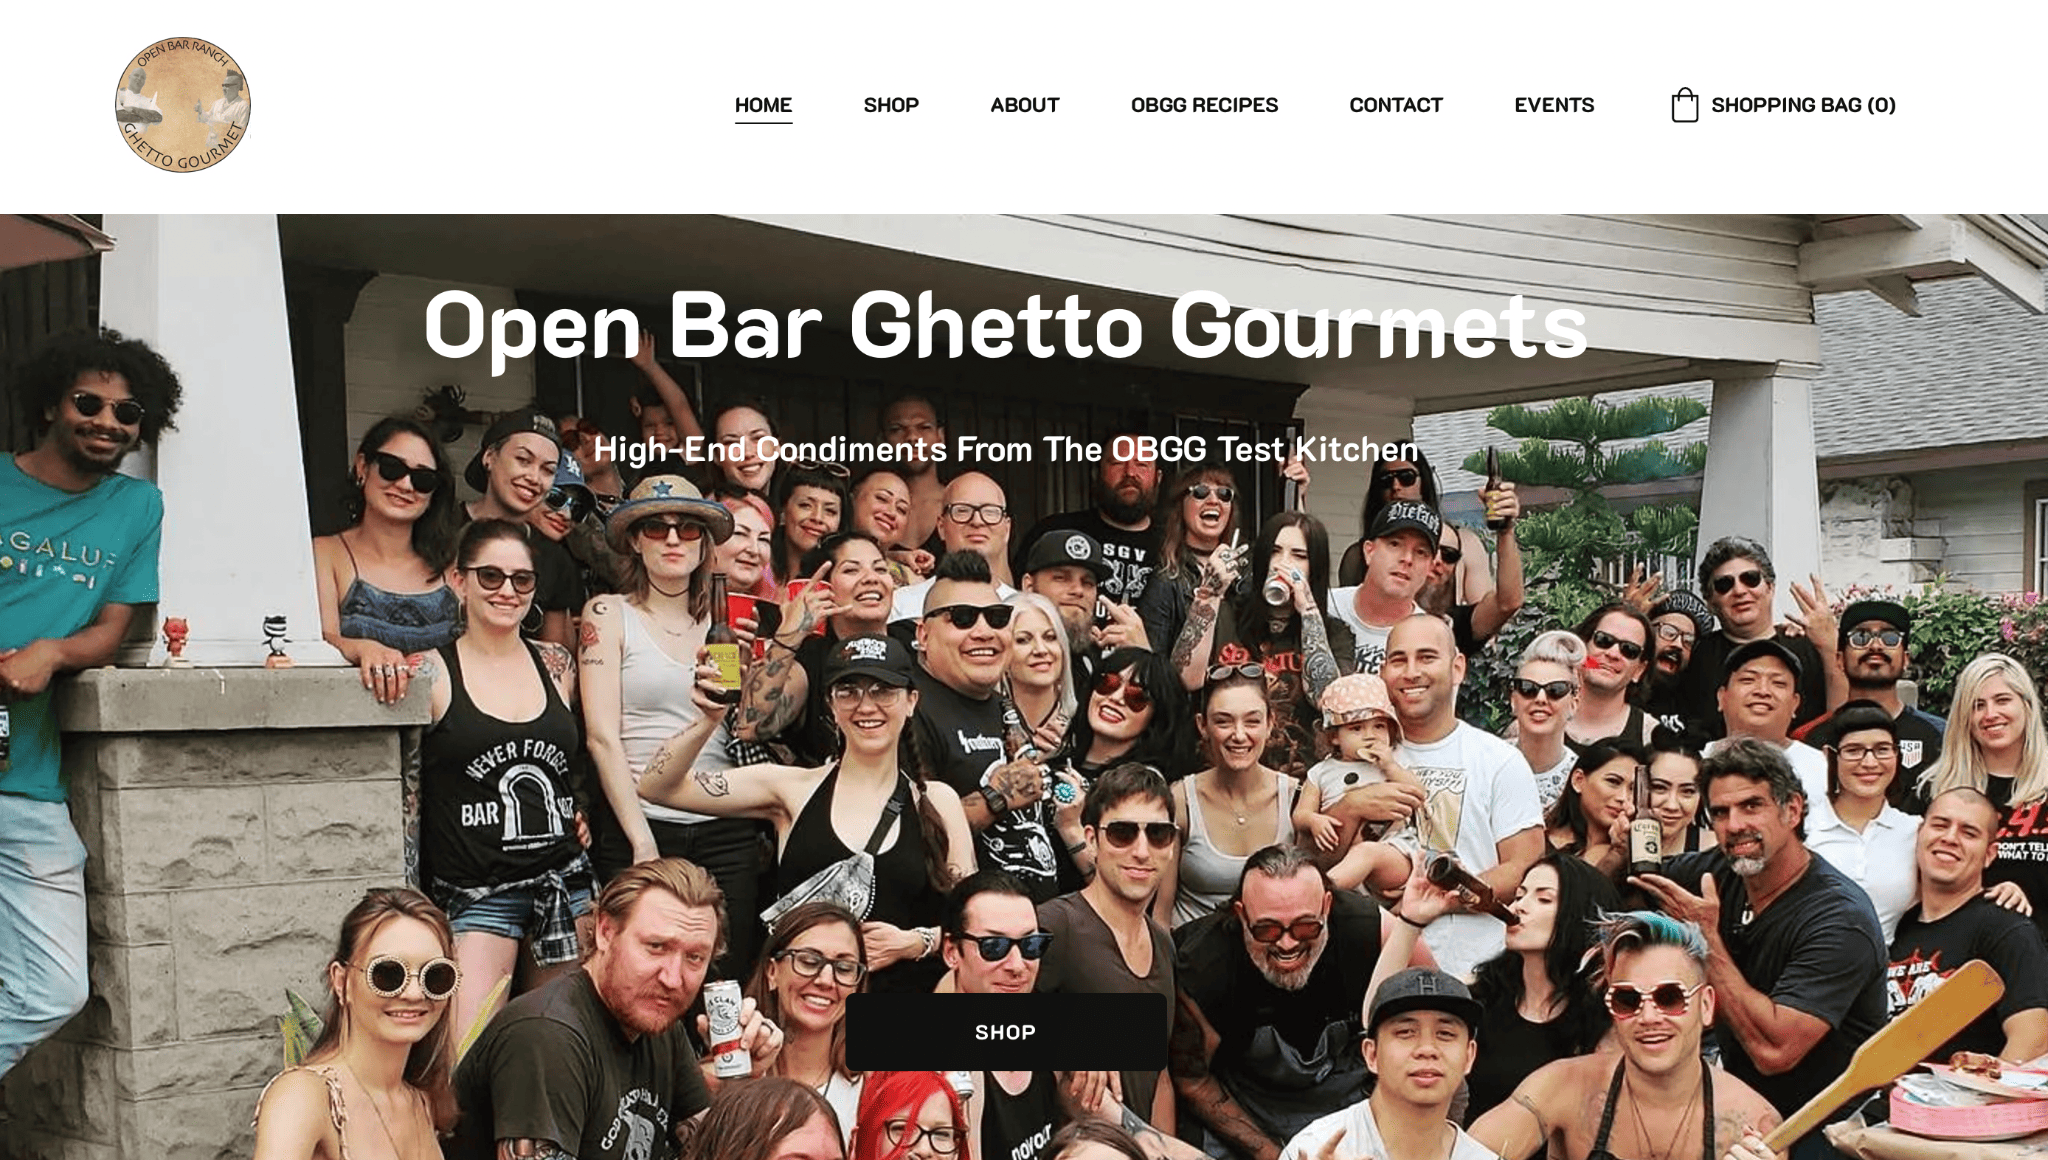 zyro website example - open bar ghetto gourmets